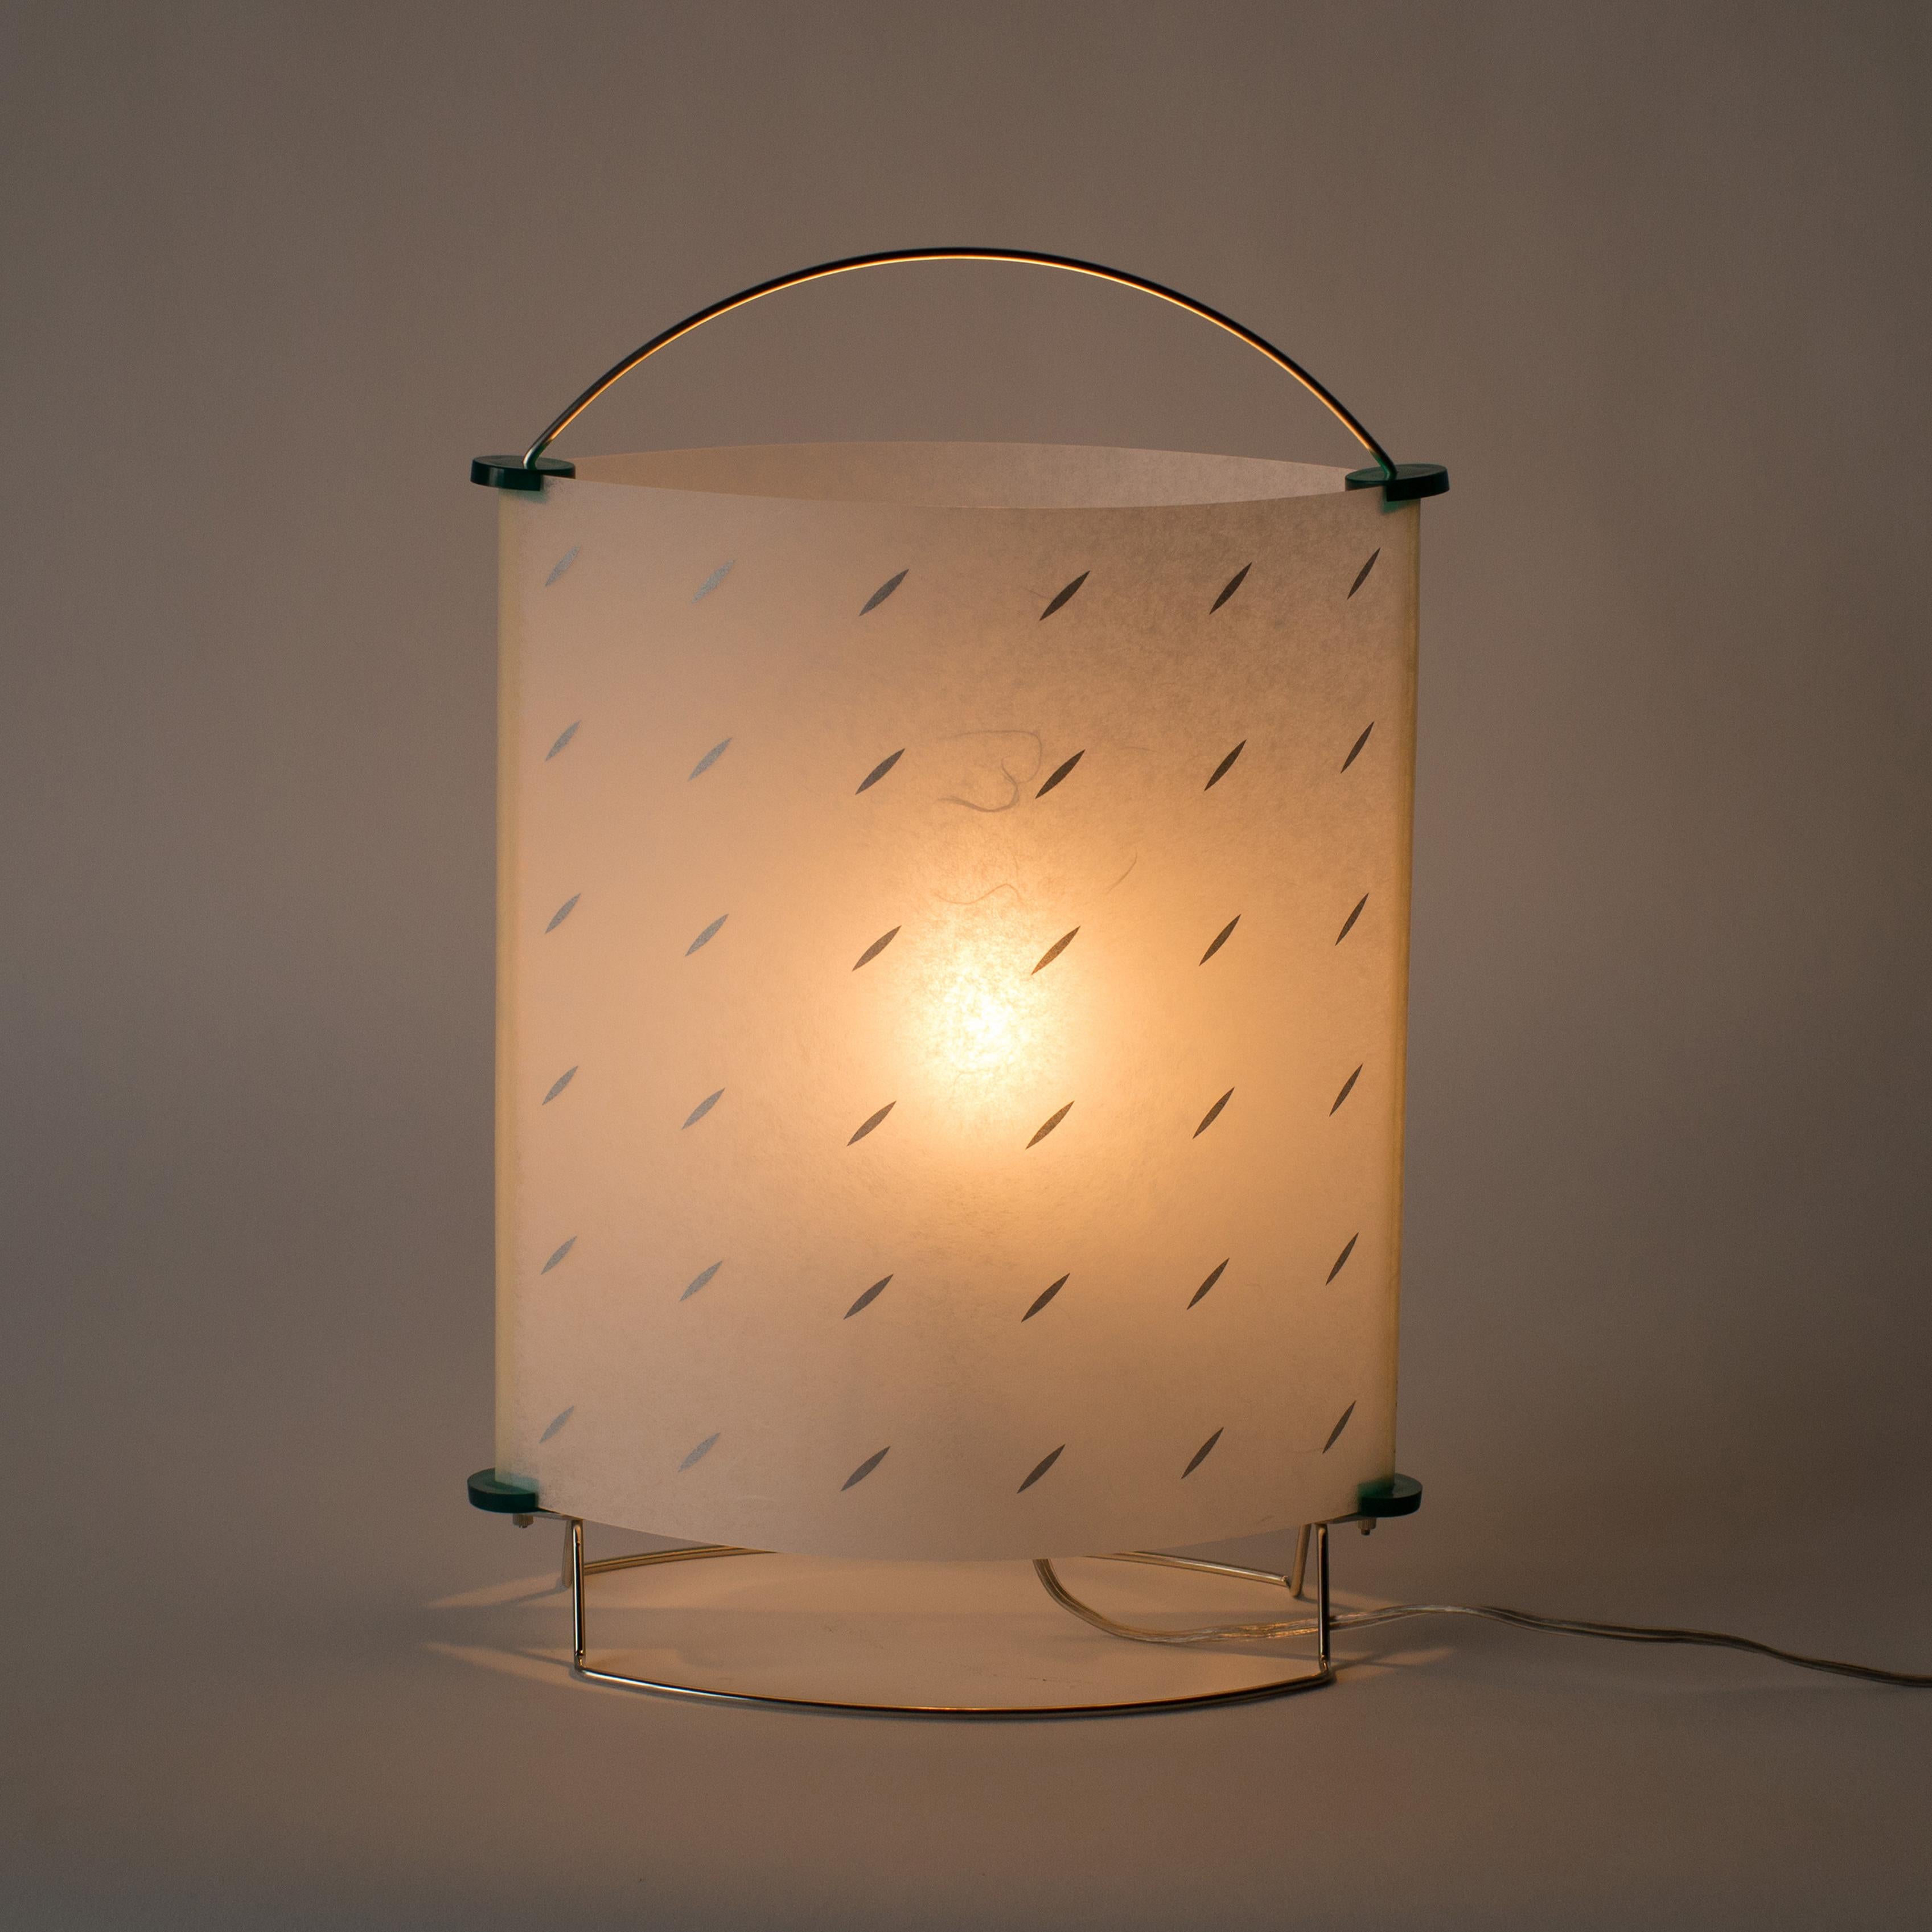 Lampadaire ou lampe de table conçu par Masanori Umeda.
Ce luminaire est composé d'un cadre en acier inoxydable et d'un abat-jour en papier japonais washi recouvert de plastique. L'ombre a la texture originale du washi.